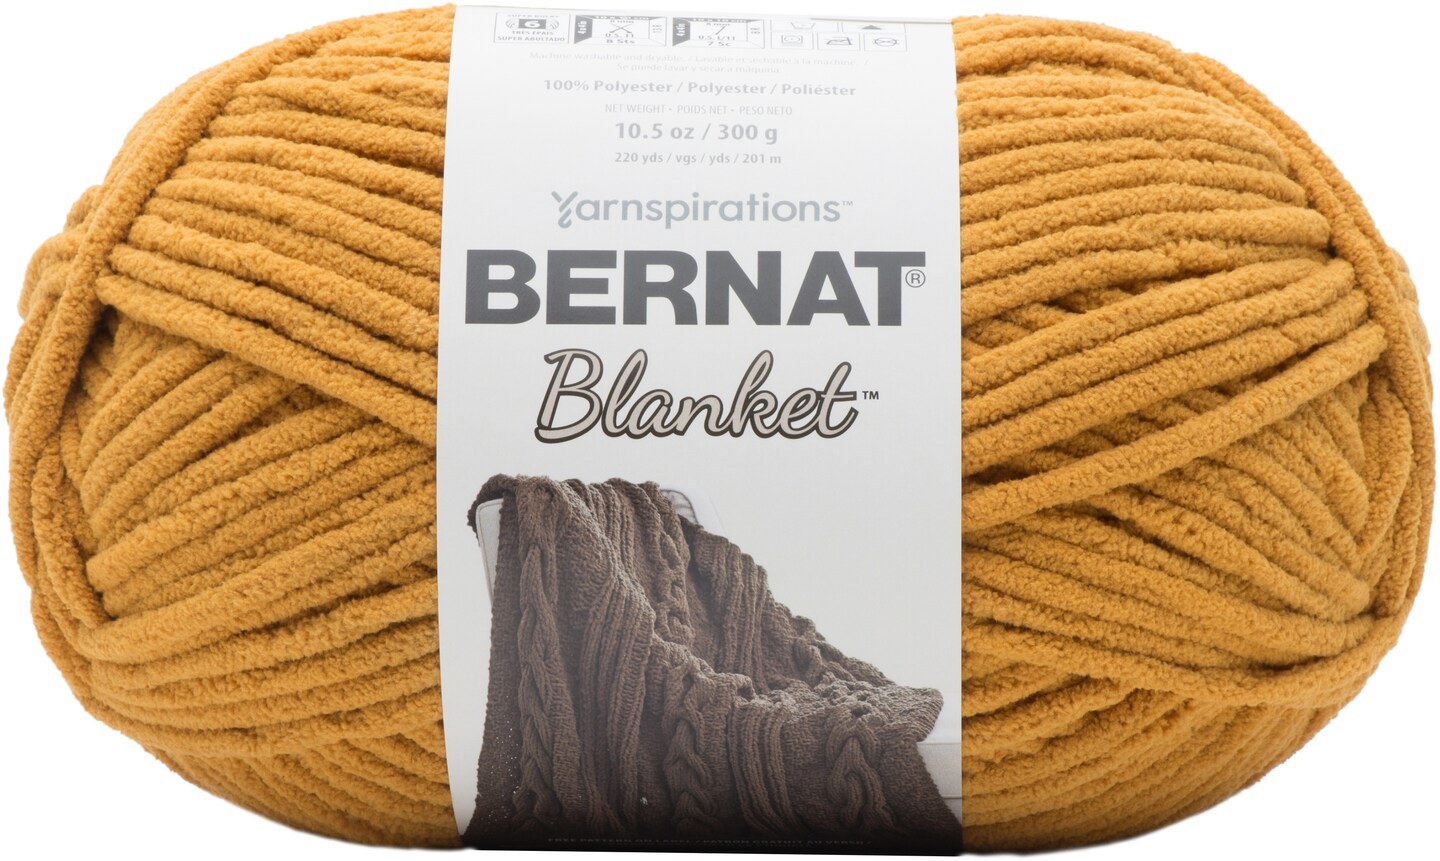 Bernat Blanket Coal Yarn - 2 Pack of 300g/10.5oz - Polyester - 6 Super Bulky - 220 Yards - Knitting/Crochet